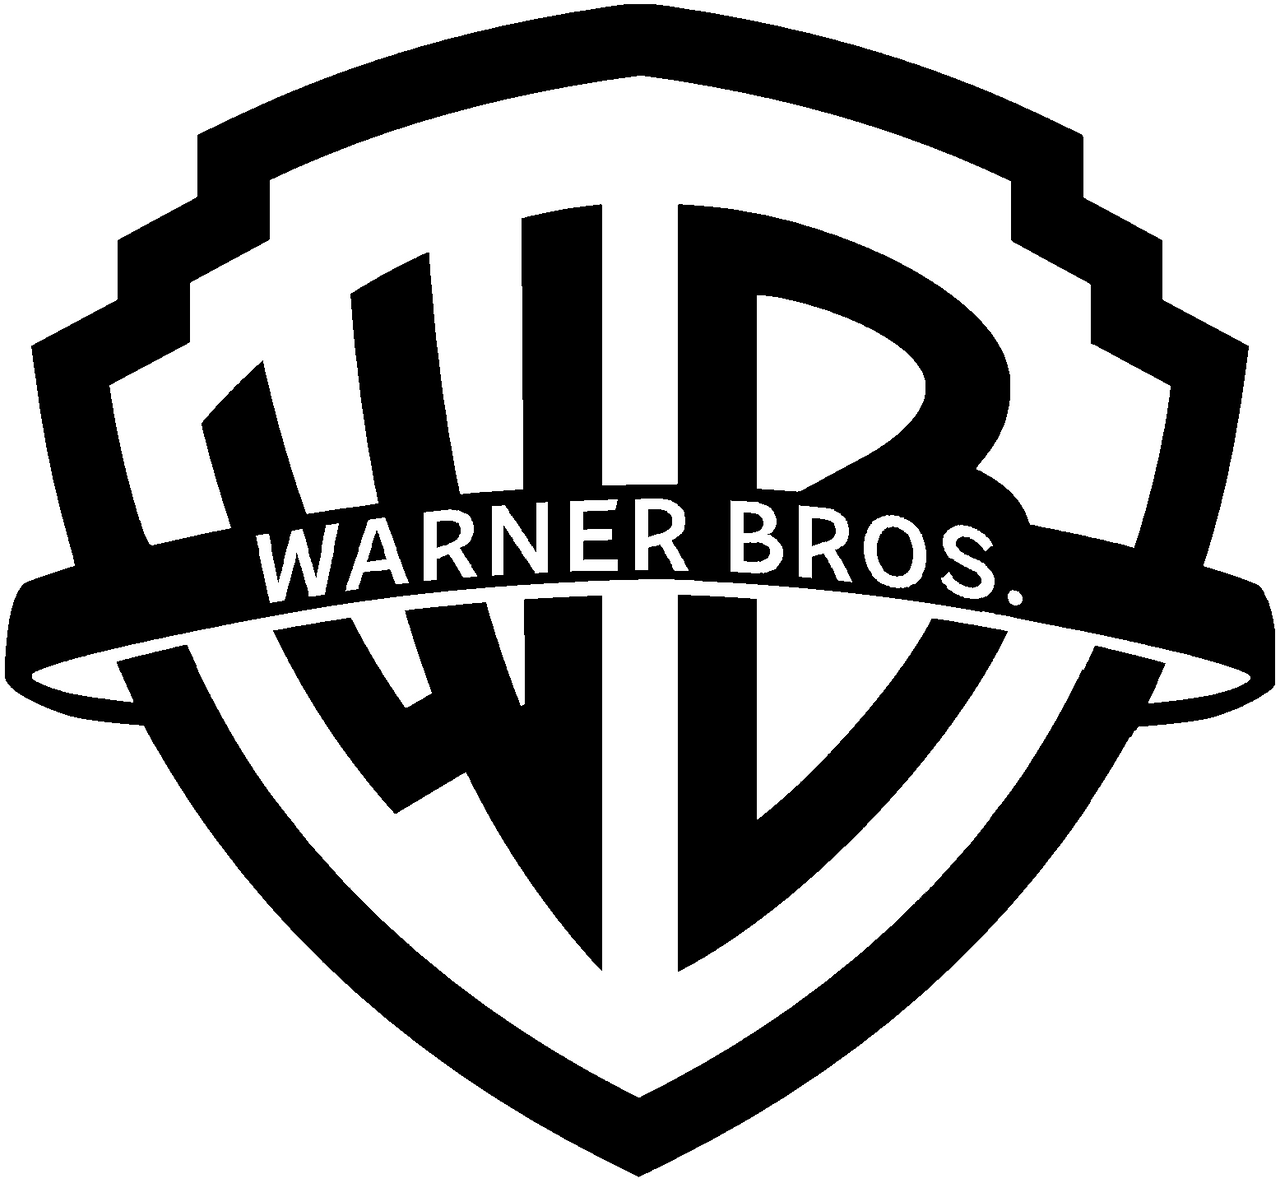 Warner Bros  Logo Concept 2024 By Wbblackofficial Dglou4g Fullview ?token=eyJ0eXAiOiJKV1QiLCJhbGciOiJIUzI1NiJ9.eyJzdWIiOiJ1cm46YXBwOjdlMGQxODg5ODIyNjQzNzNhNWYwZDQxNWVhMGQyNmUwIiwiaXNzIjoidXJuOmFwcDo3ZTBkMTg4OTgyMjY0MzczYTVmMGQ0MTVlYTBkMjZlMCIsIm9iaiI6W1t7ImhlaWdodCI6Ijw9MTE4MyIsInBhdGgiOiJcL2ZcLzc1MTliOTZjLTcxZjgtNDA0MC04MmQ0LWM4MGUxODM4NGYxYlwvZGdsb3U0Zy05YjZjZGMyZS03NTk1LTQwYWQtYjNmNC0yZWQwOTFmZDIyNTYucG5nIiwid2lkdGgiOiI8PTEyODAifV1dLCJhdWQiOlsidXJuOnNlcnZpY2U6aW1hZ2Uub3BlcmF0aW9ucyJdfQ.2GH3hCQVC2Xah 19Ud1PTSMnfx6EAv70gDFxtMM6wn0